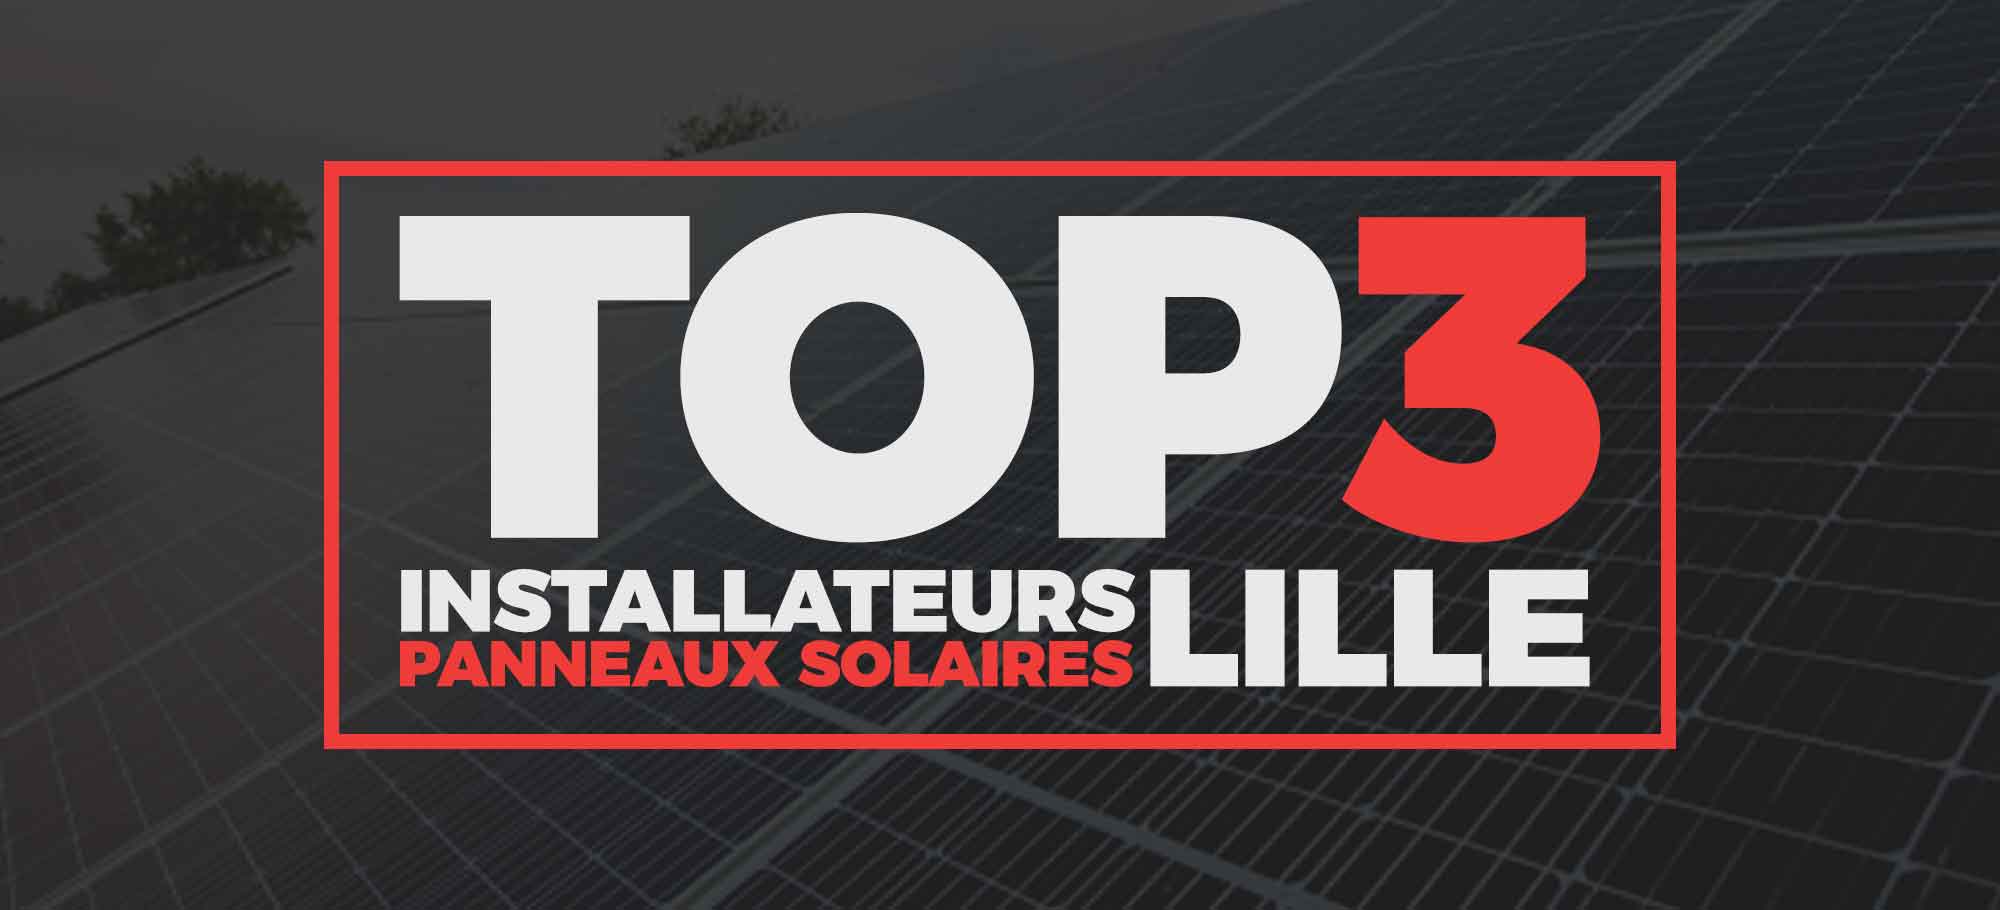 You are currently viewing Top 3 des installateurs de panneaux solaires à Lille